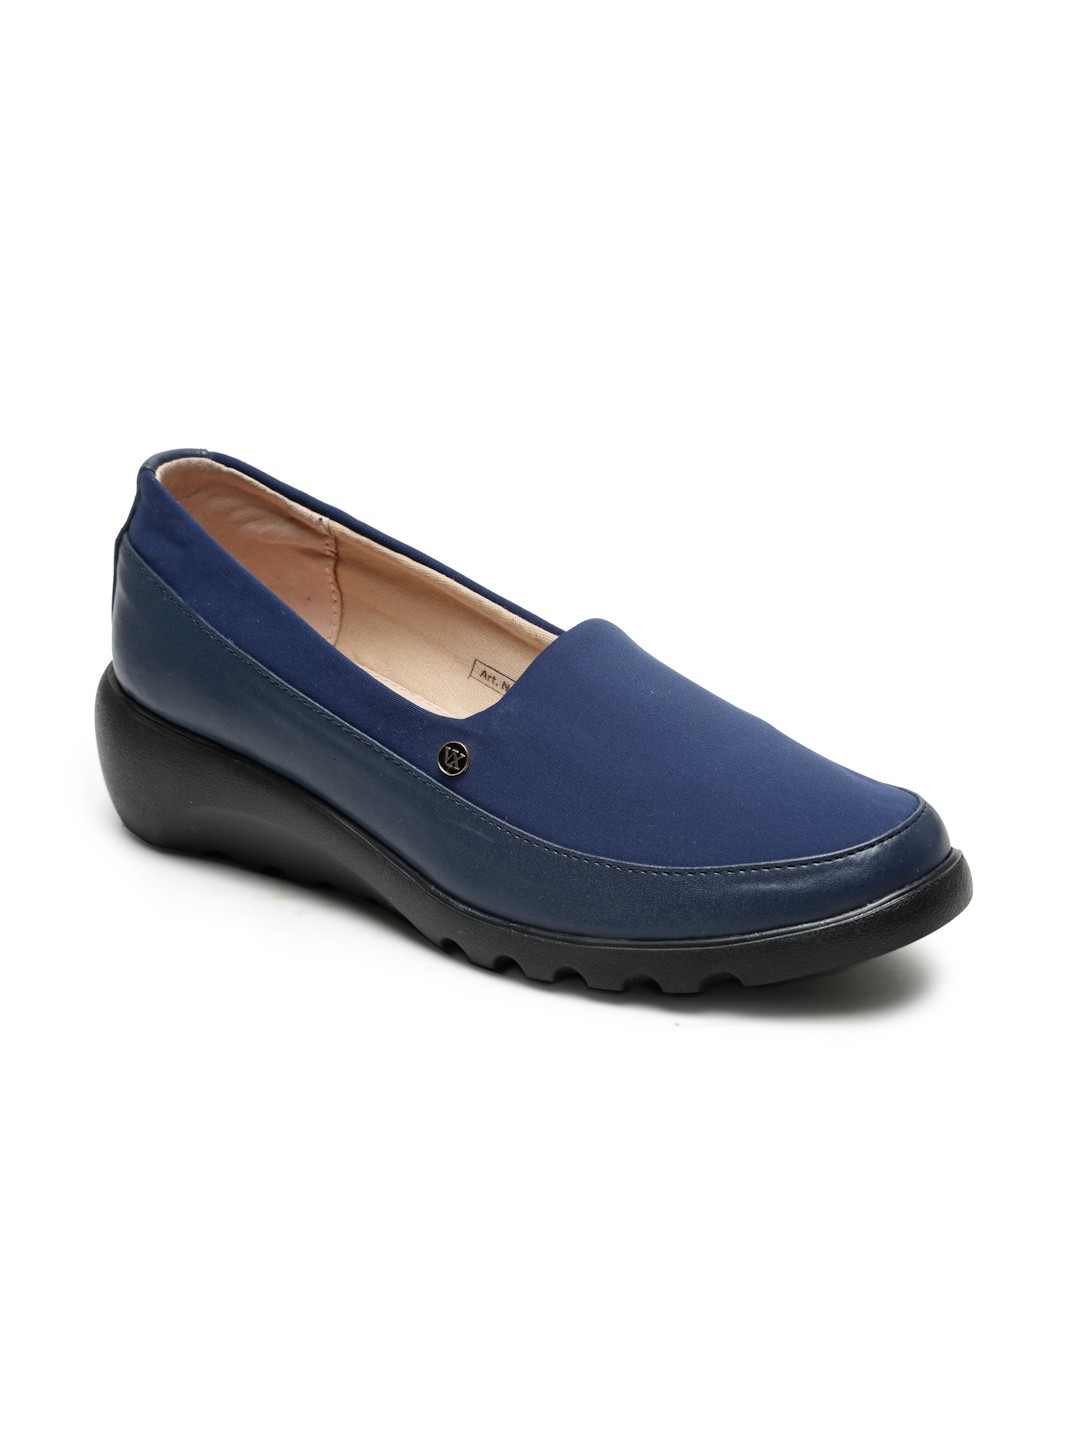 Buy Von Wellx Germany Comfort Women's Blue Casual Shoes Elsa Online in Vadodara